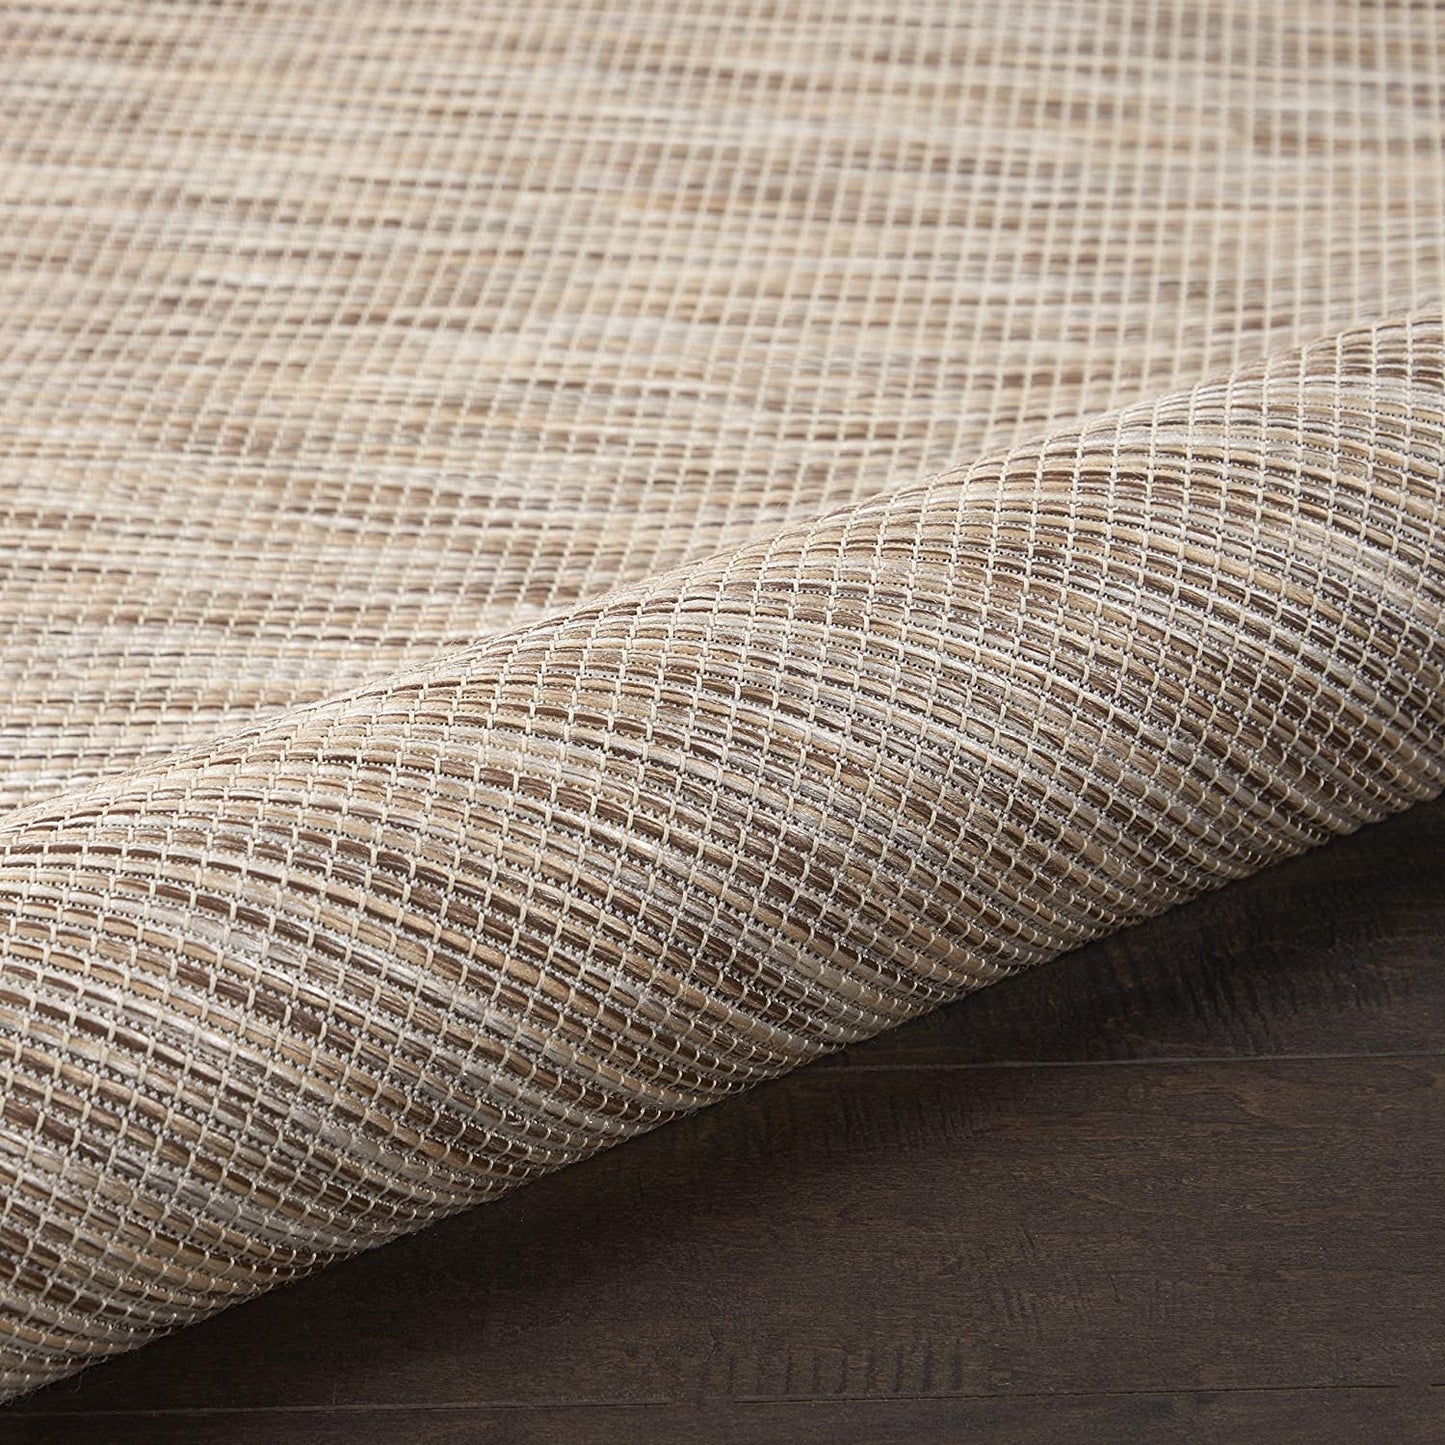 Positano Flat-Weave Indoor/Outdoor Beige Area Rug